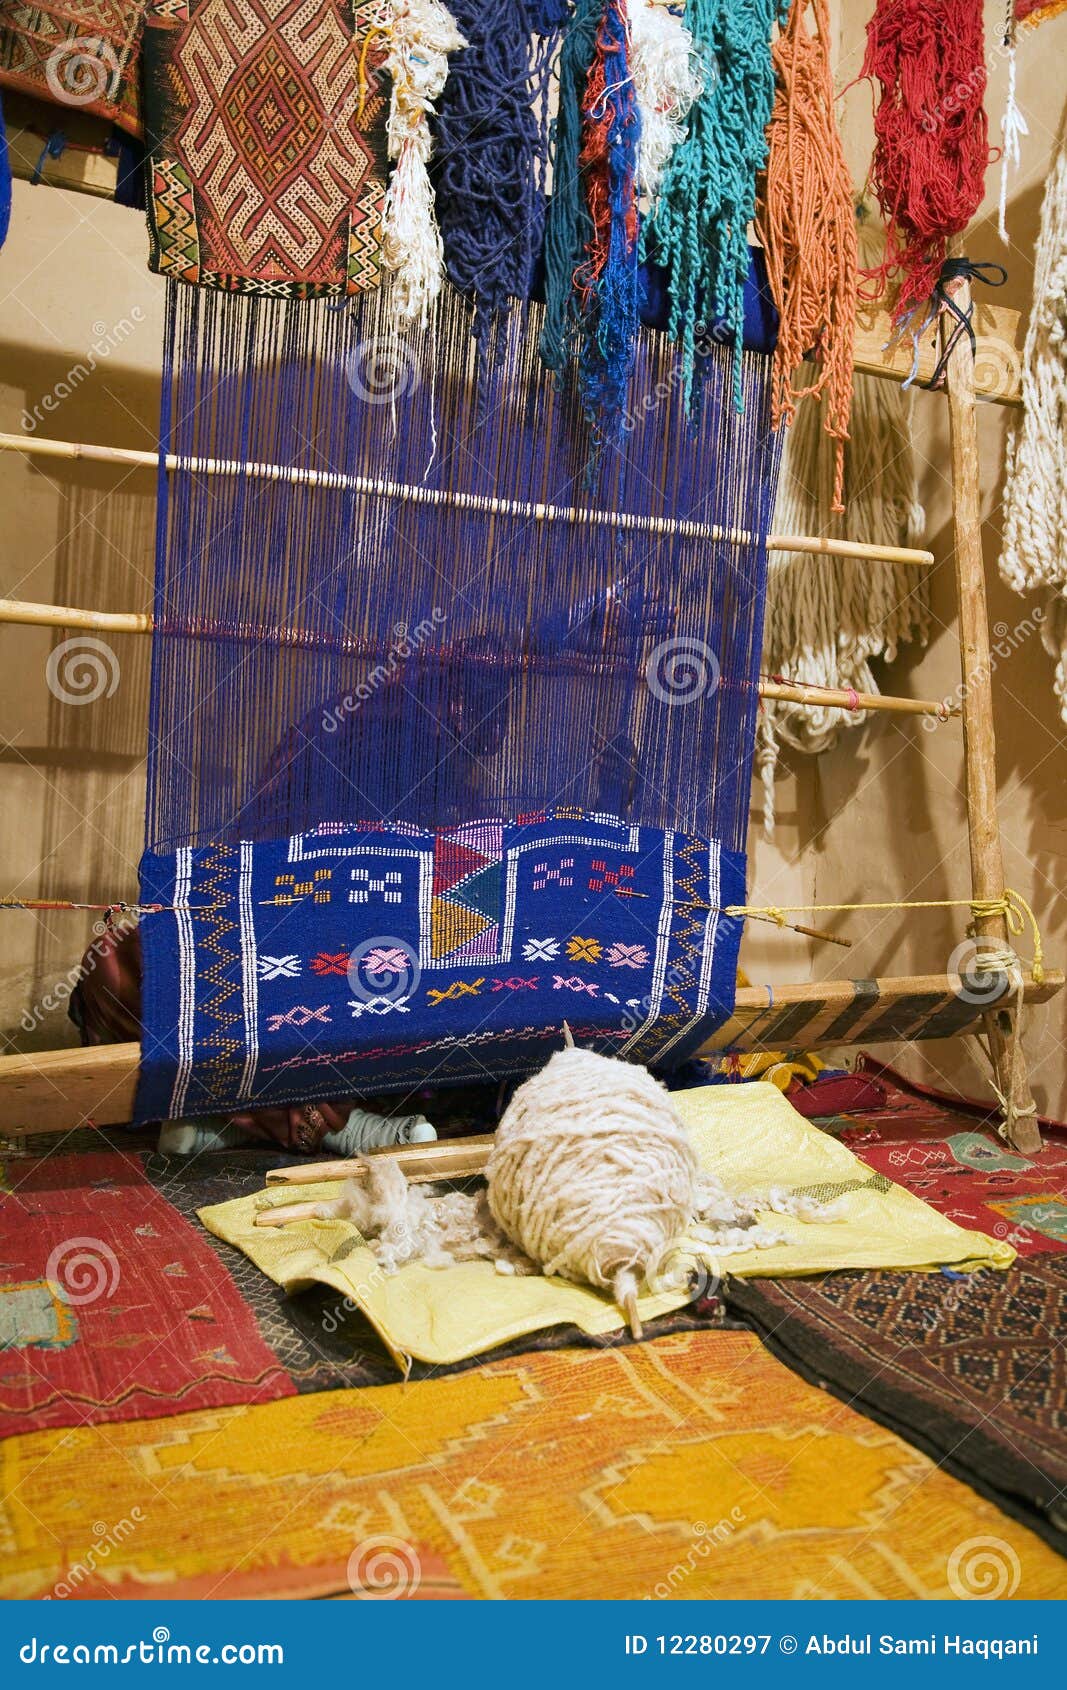 berber carpet making